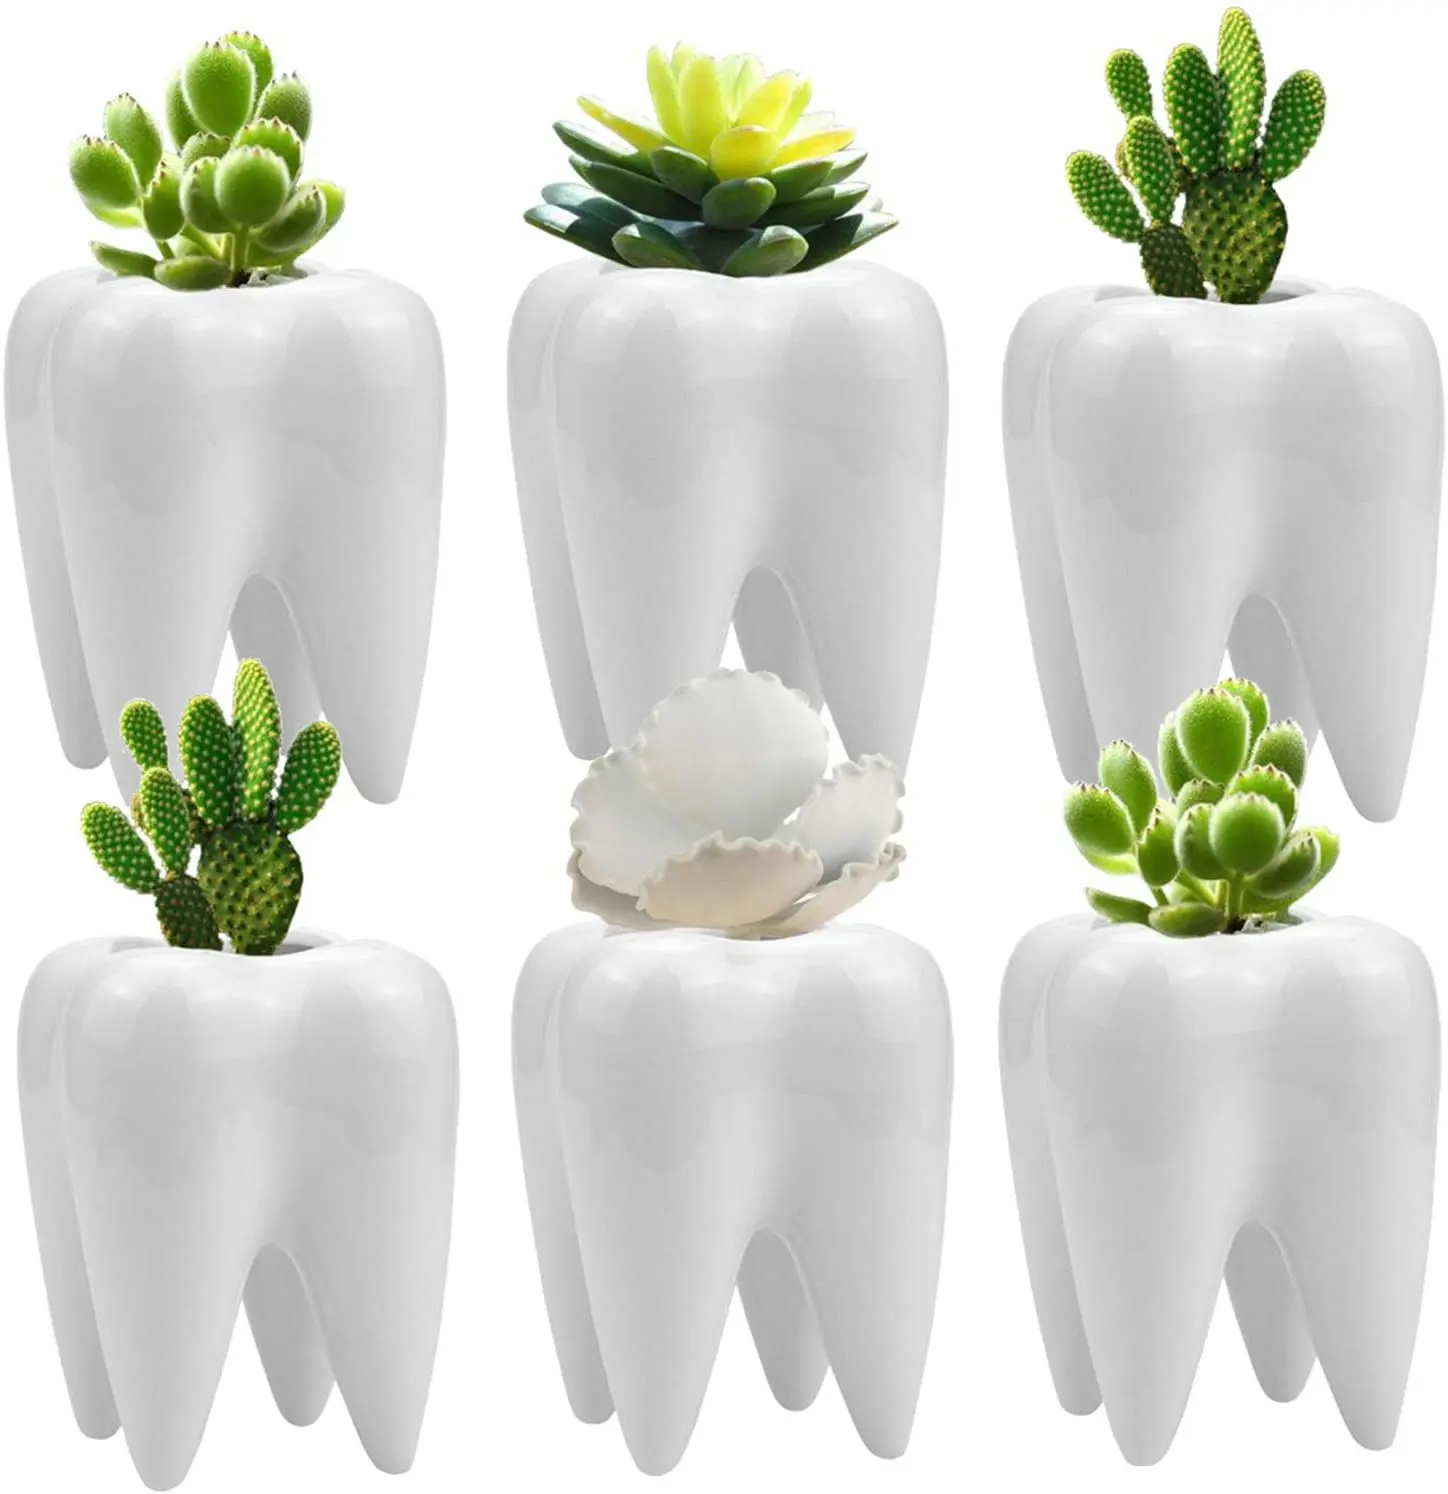 Artificial Cactus plant pot cups planter for succulents natural flowers white ceramic Tooth Shape Flower Pot Garden Bonsai decor